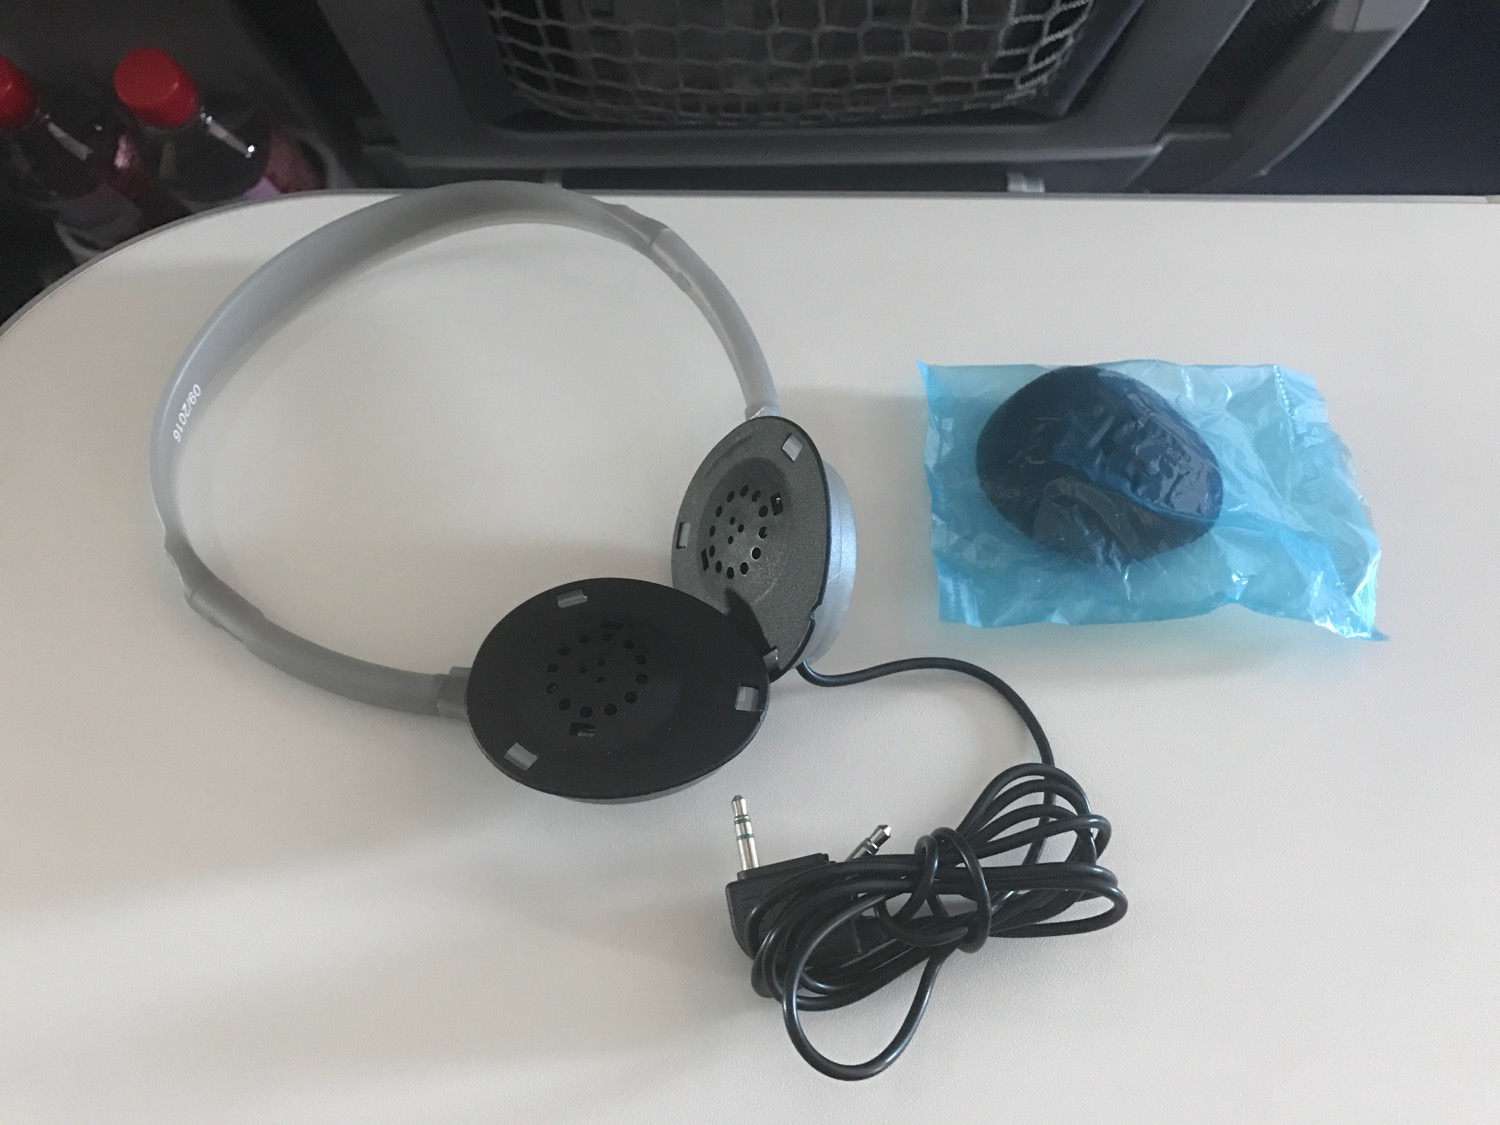 a headphones on a table